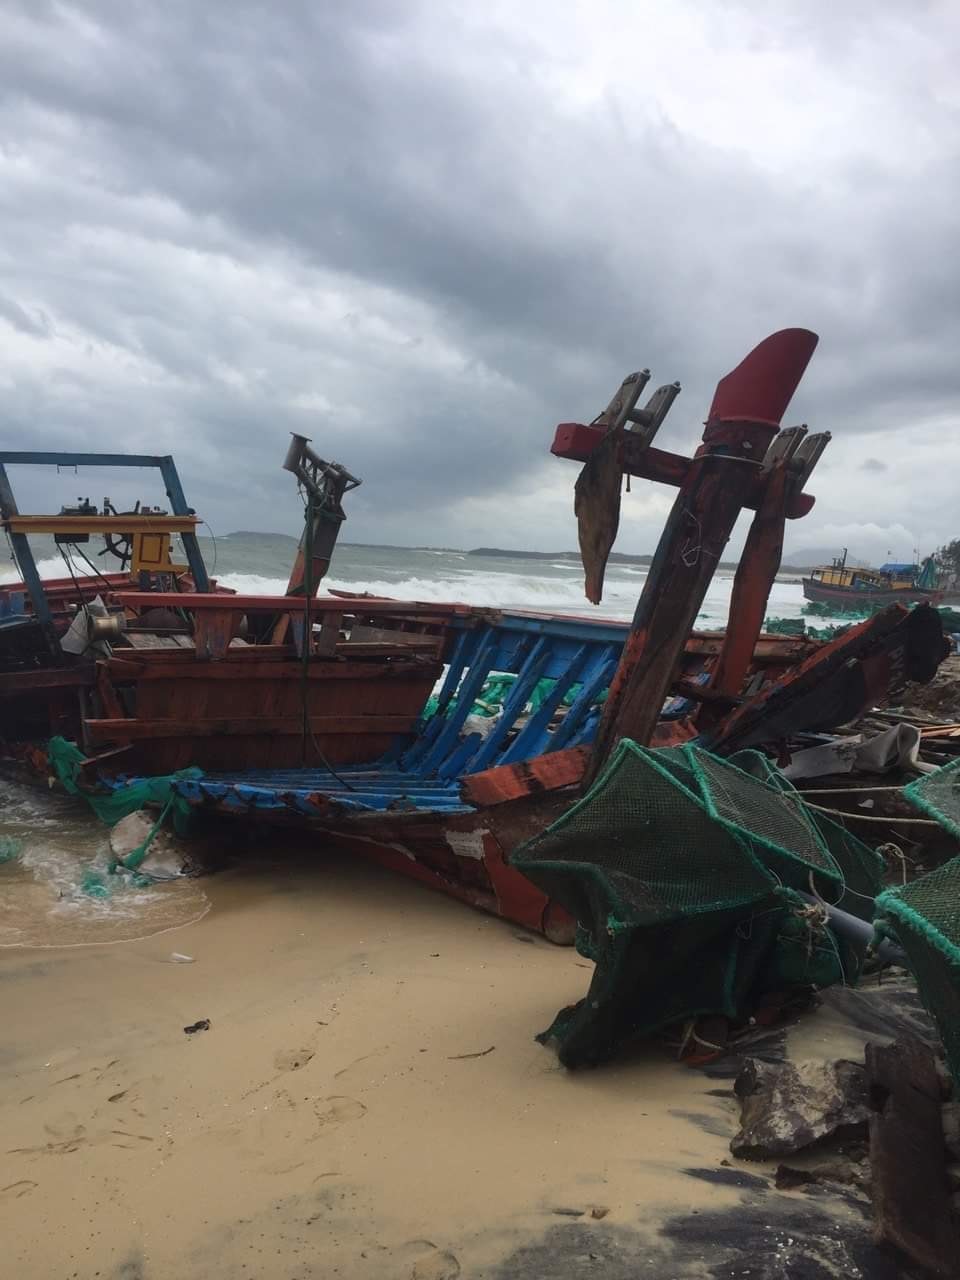 90 con tàu đã bị phá huỷ sau khi cơn lốc bất thường ập vào Phú Yên khiến cho hàng trăm gia đình ngư dân ở Phú Yên thêm khó khăn sau gần 2 năm chống chọi với dịch bệnh thiên tai.